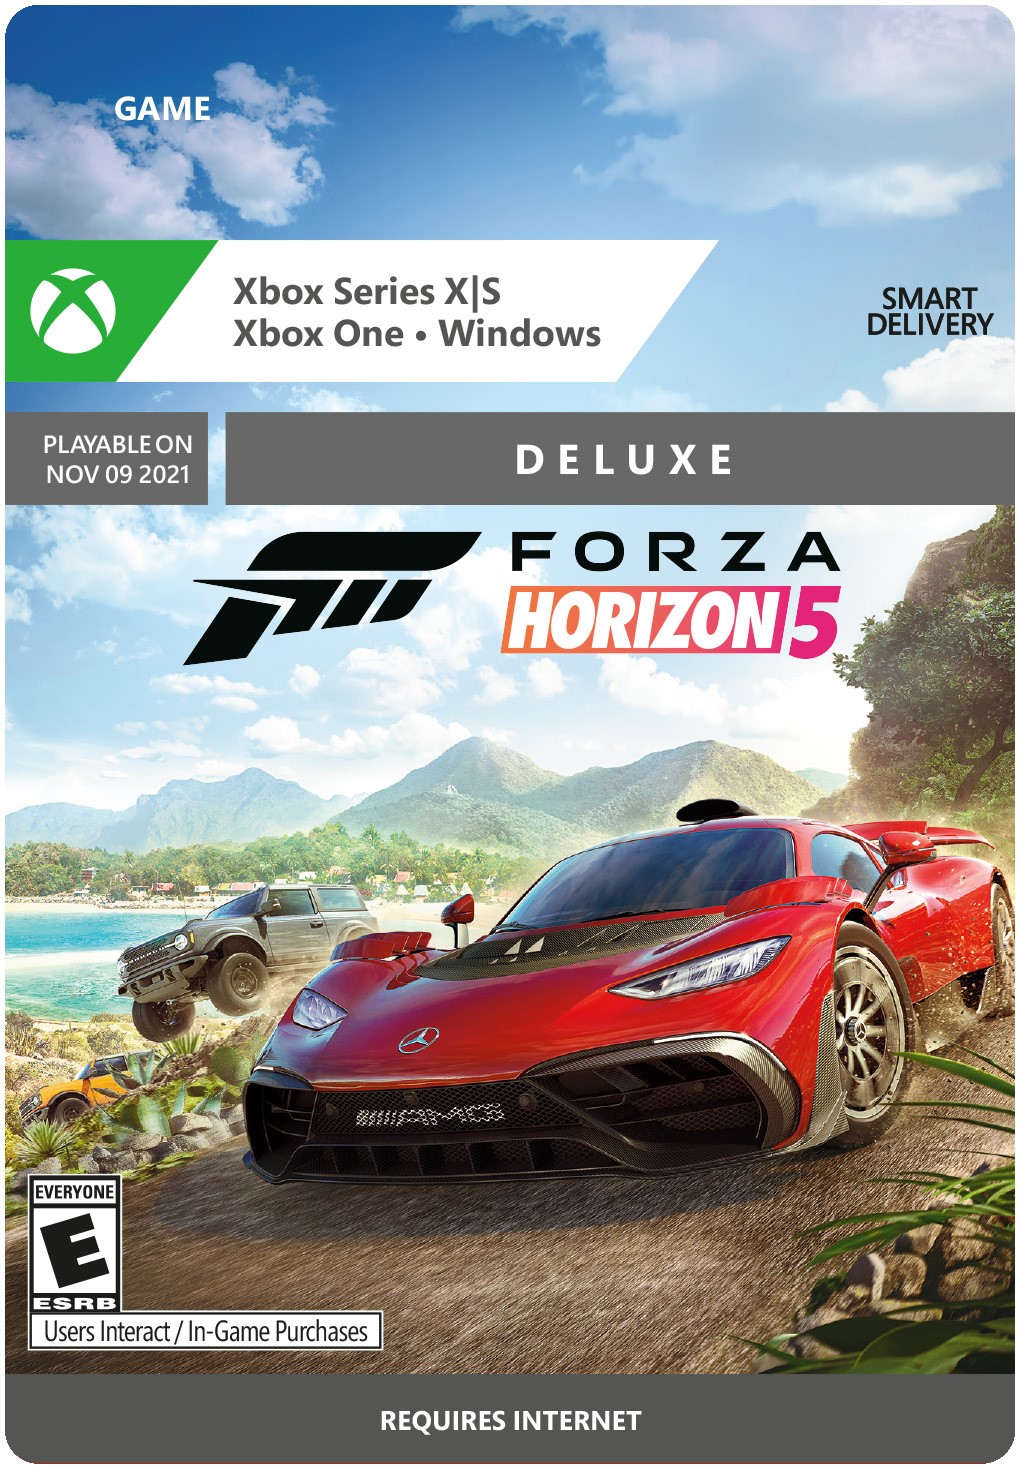 Обложка ✅ Forza Horizon 5 Deluxe Edition XBOX ONE X|S PC Ключ🔑